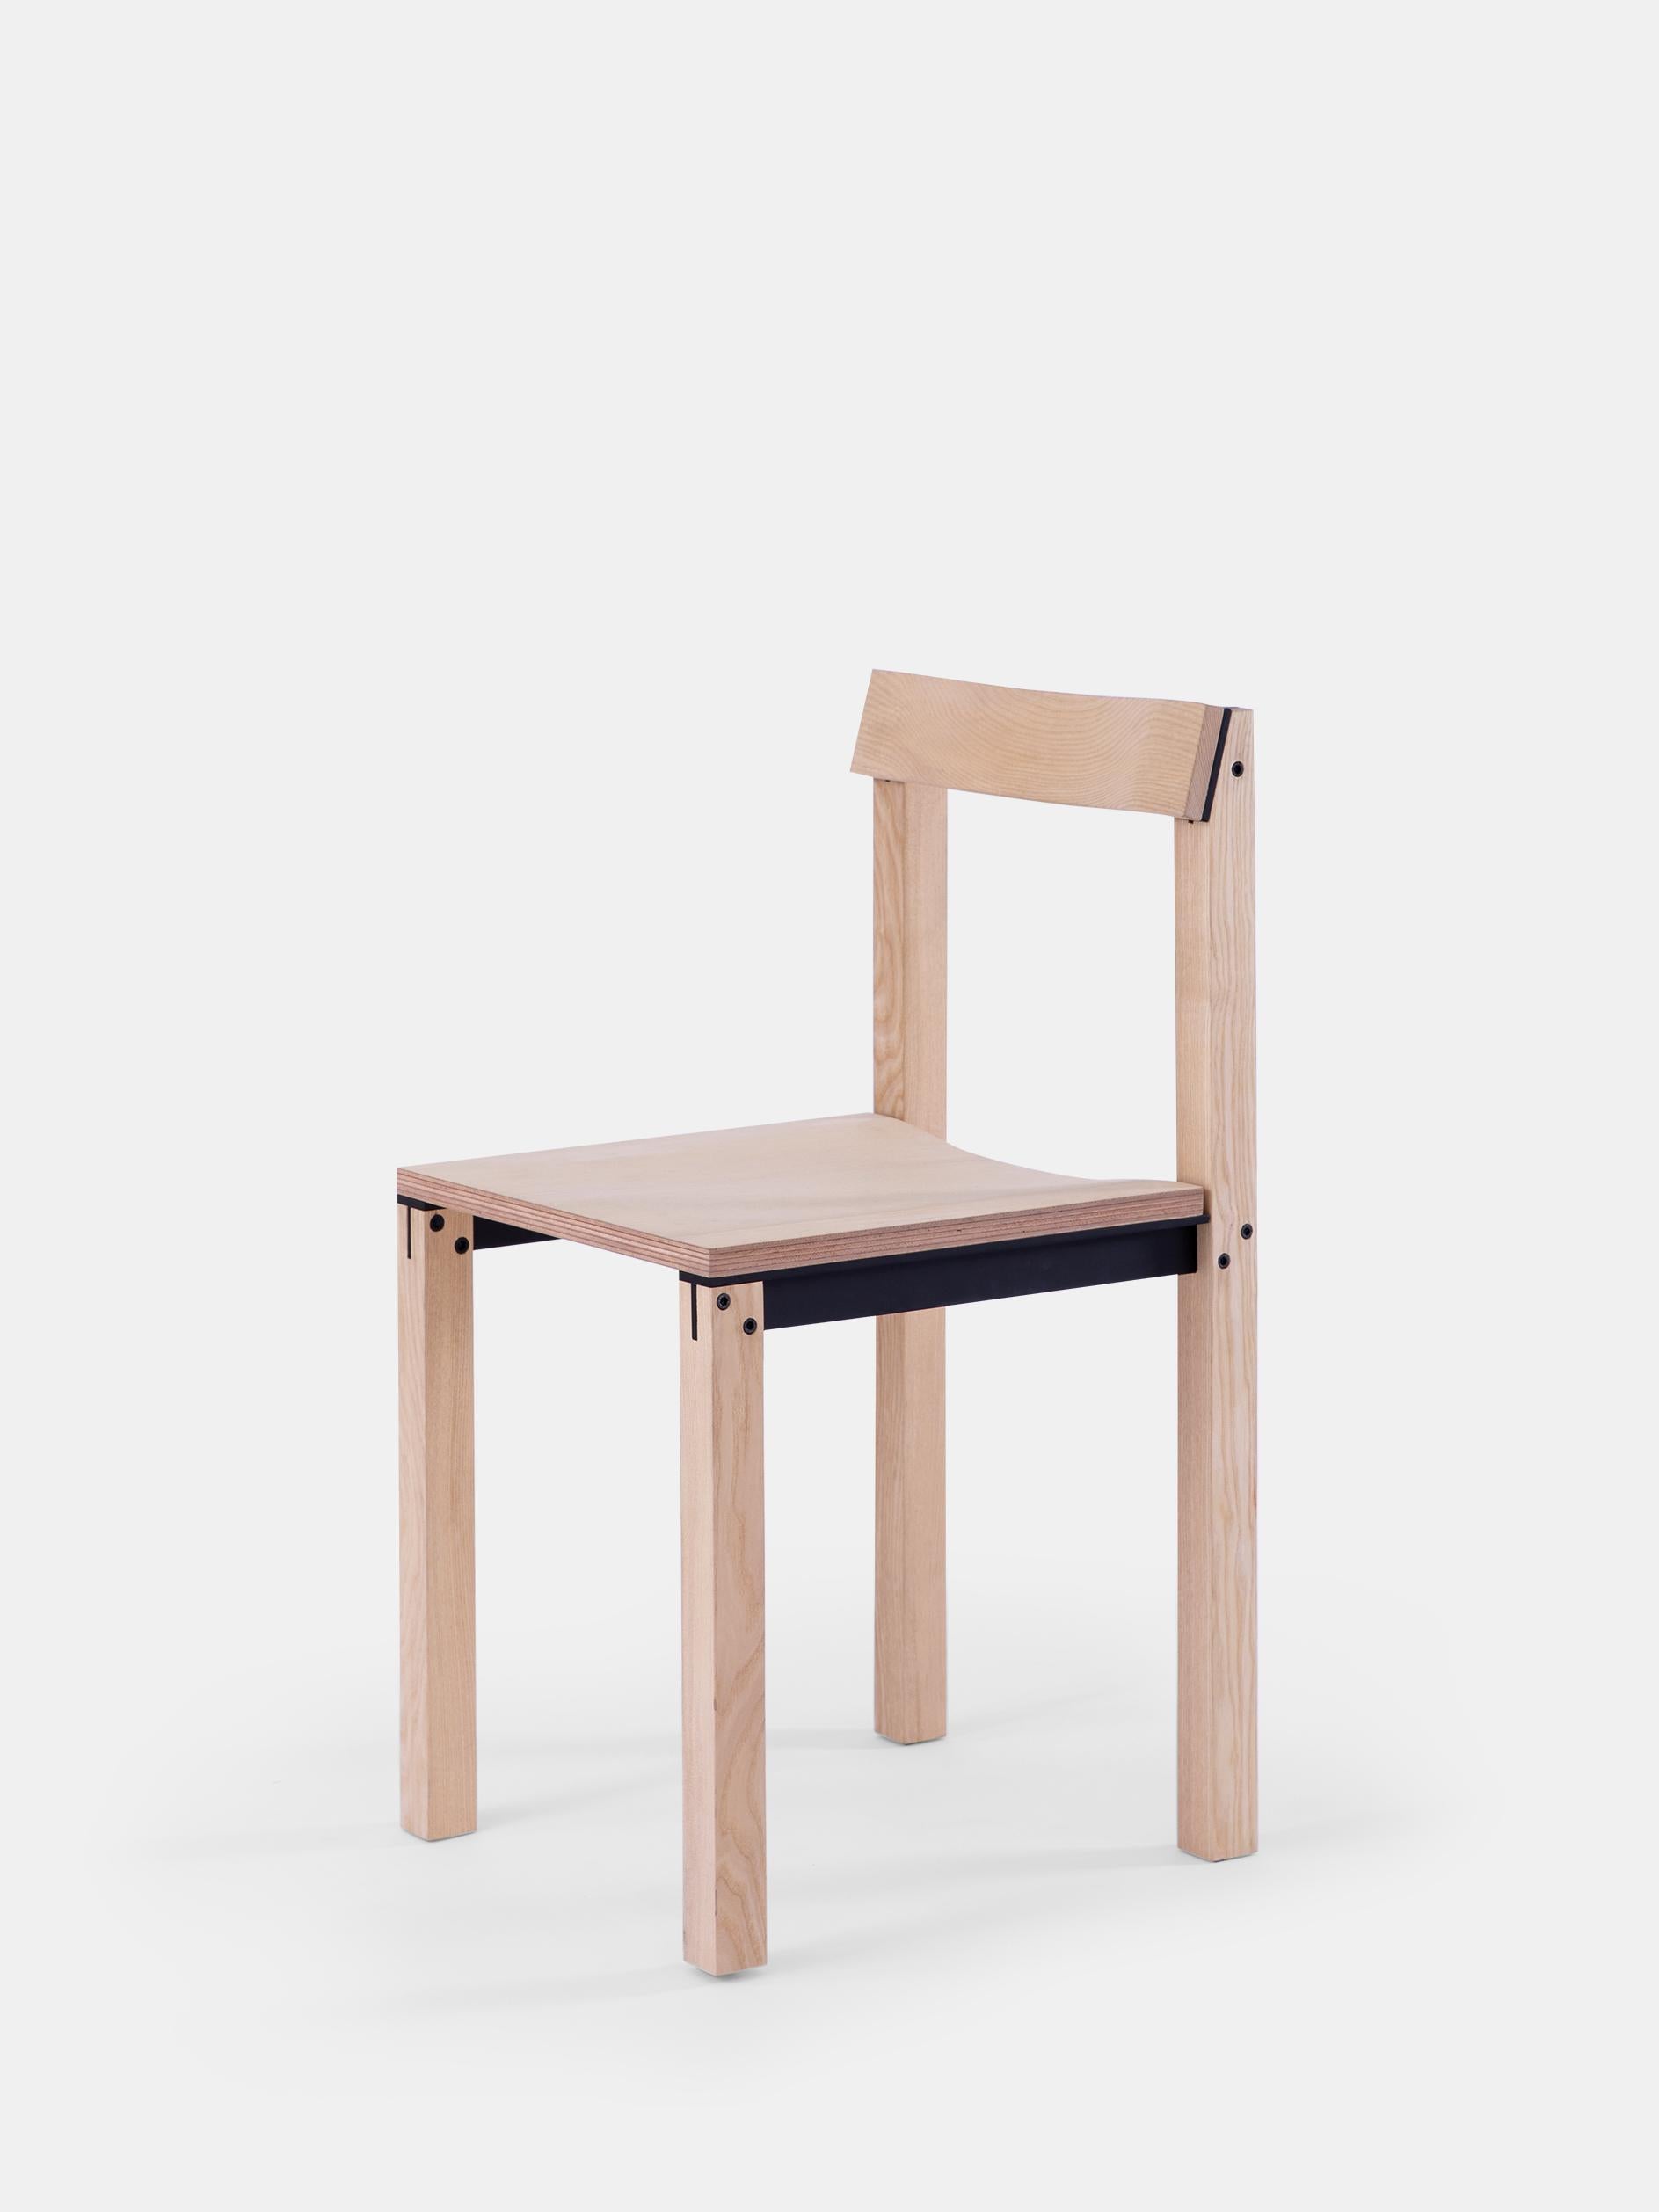 Ensemble de 8 chaises Tal Ash par Kann Design
Dimensions : D 40 x L 44 x H 80 cm.
MATERIAL : Frêne naturel, aluminium.
Disponible dans d'autres finitions.

La chaise Tal conçue par Léonard Kadid est fabriquée en aluminium et en bois.
Les profils en